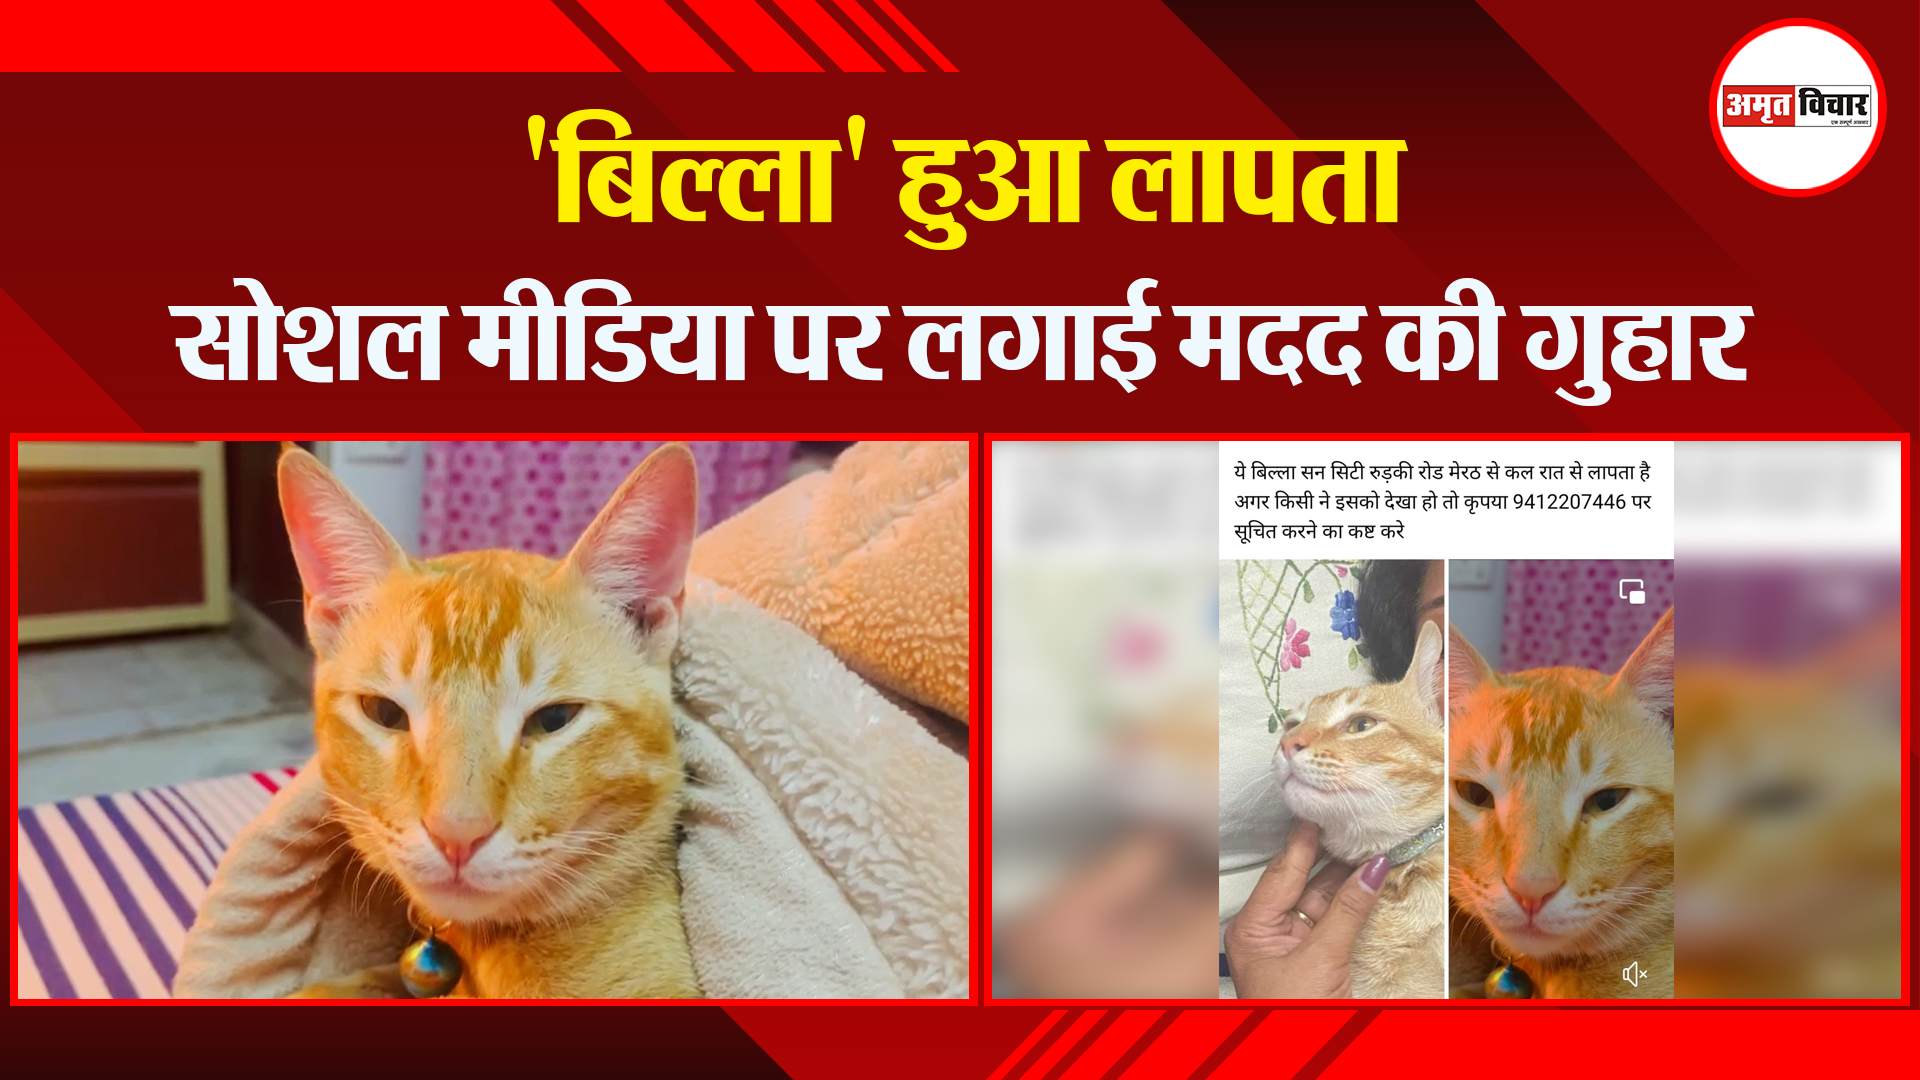 मेरठ: 'बिल्ला' हुआ लापता, सोशल मीडिया पर लगाई मदद की गुहार